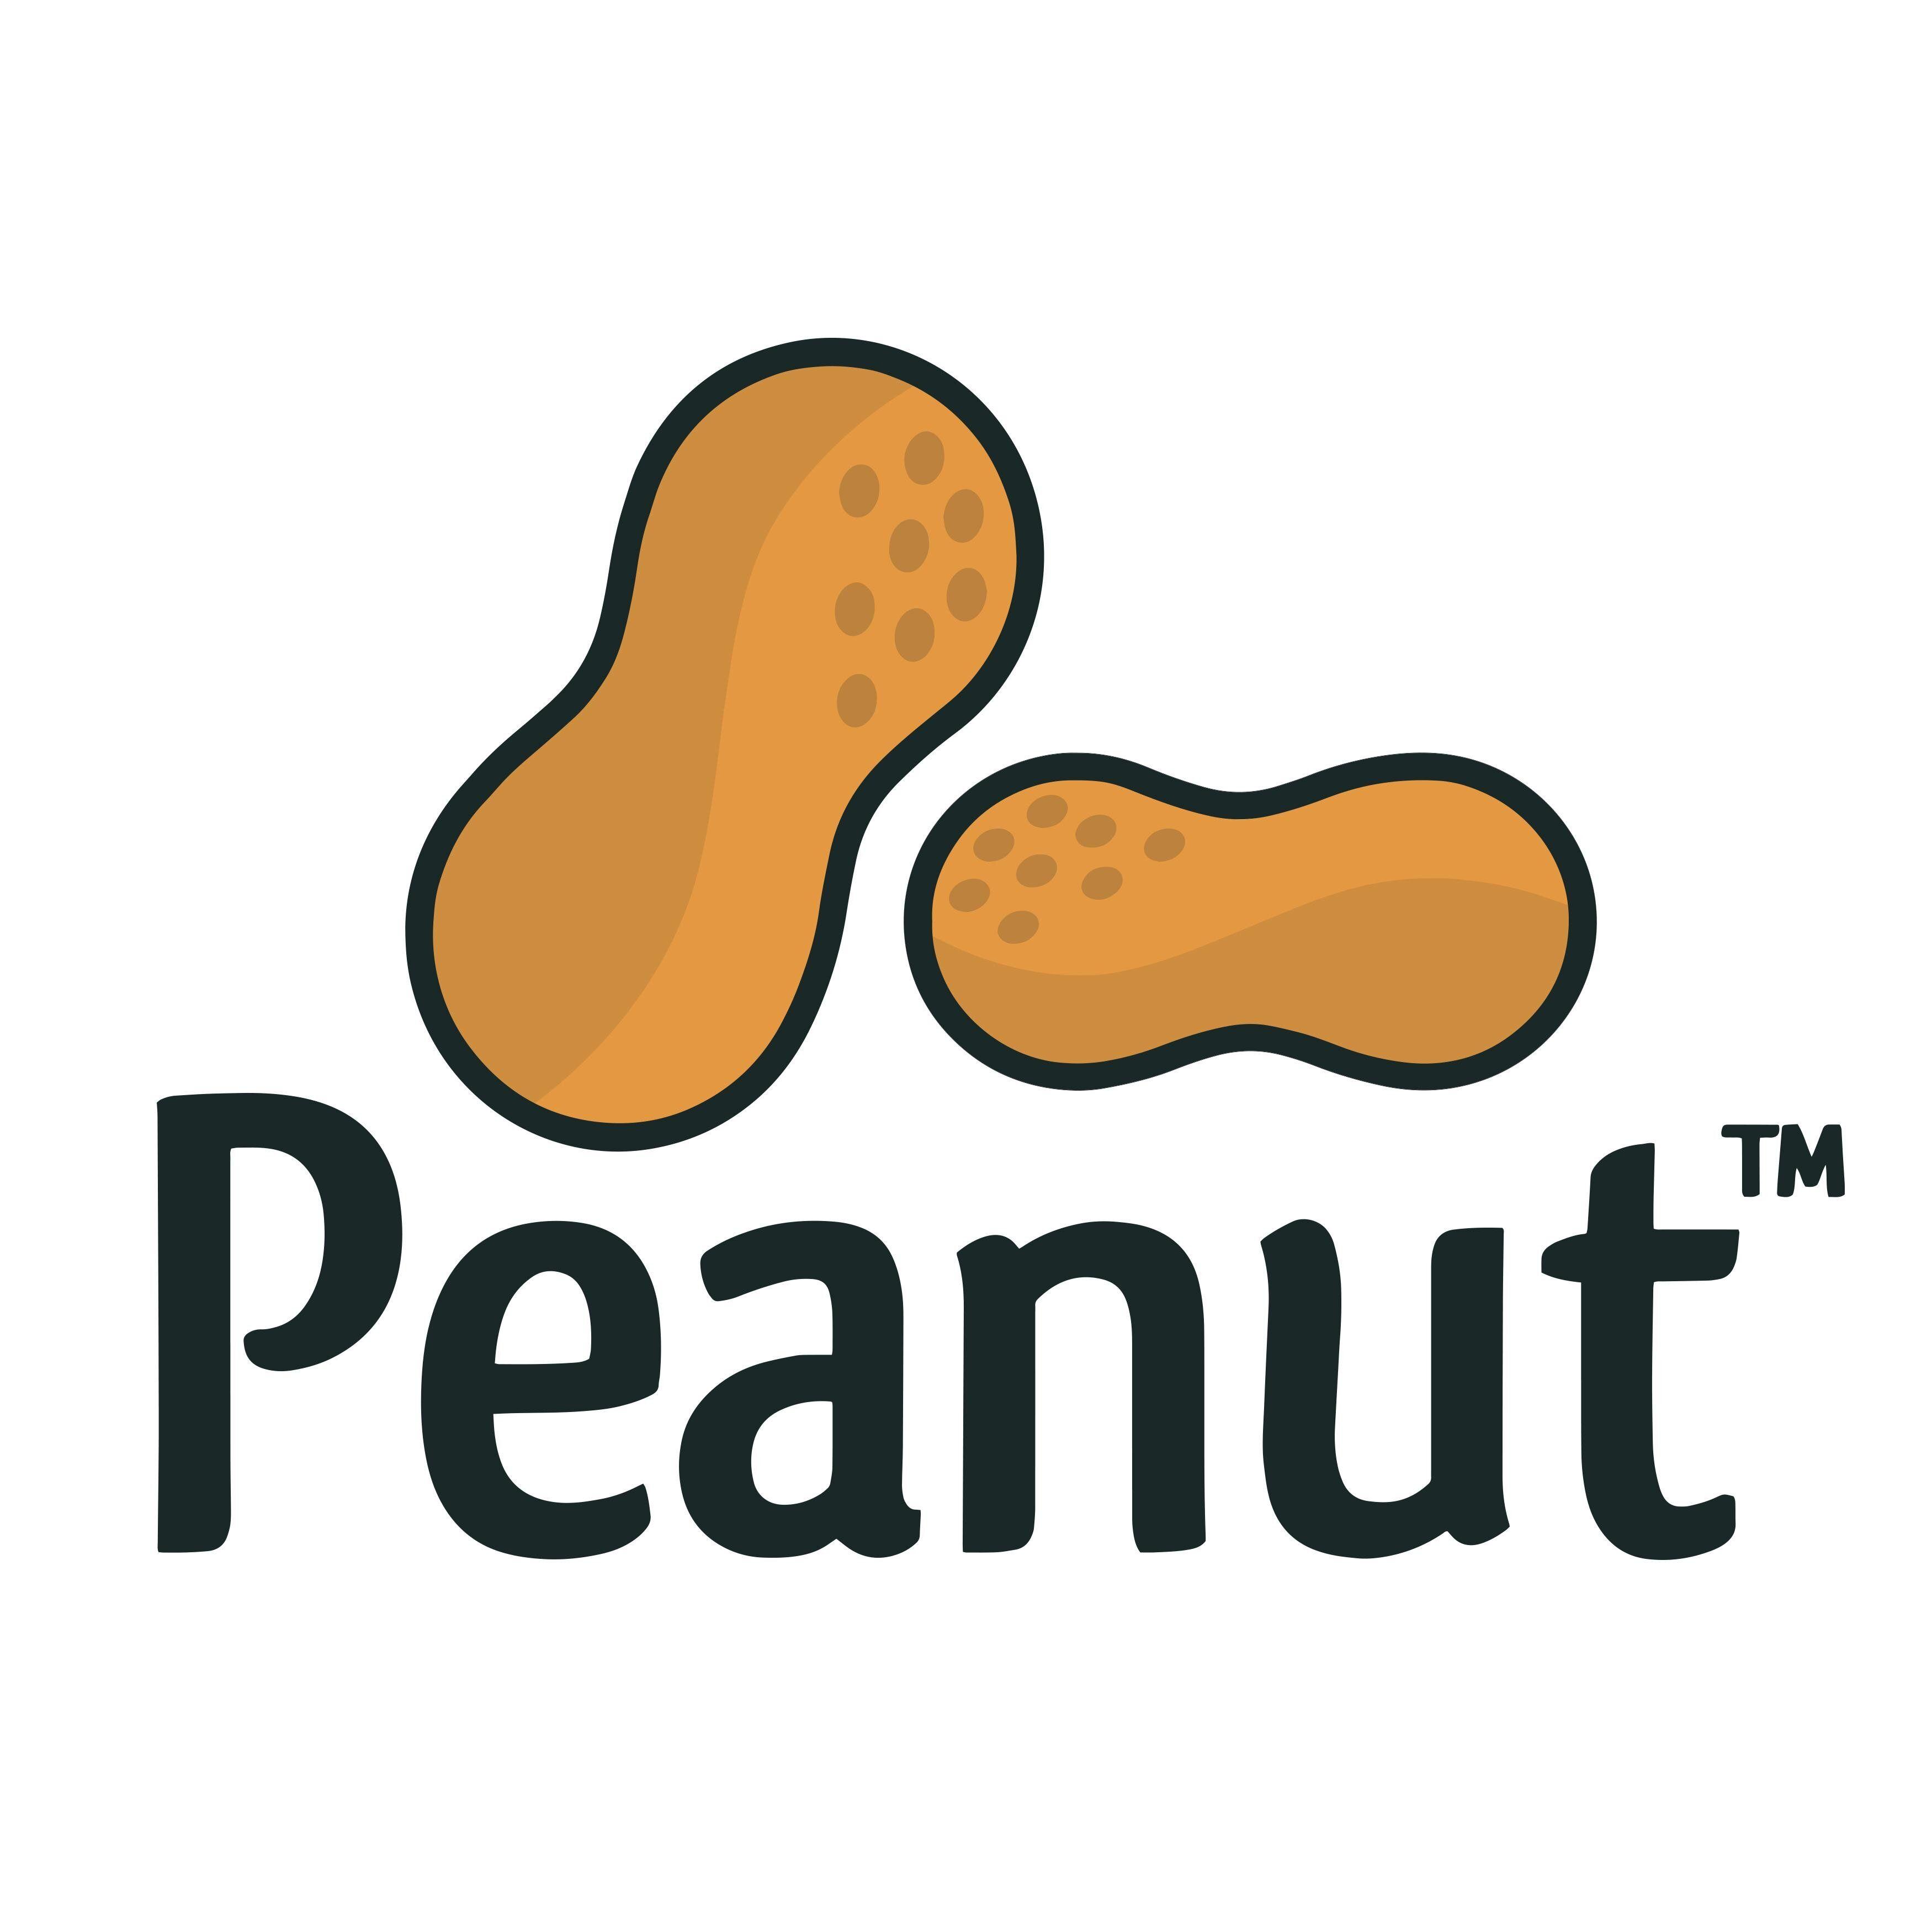 Peanut Logo - Peanut Logos